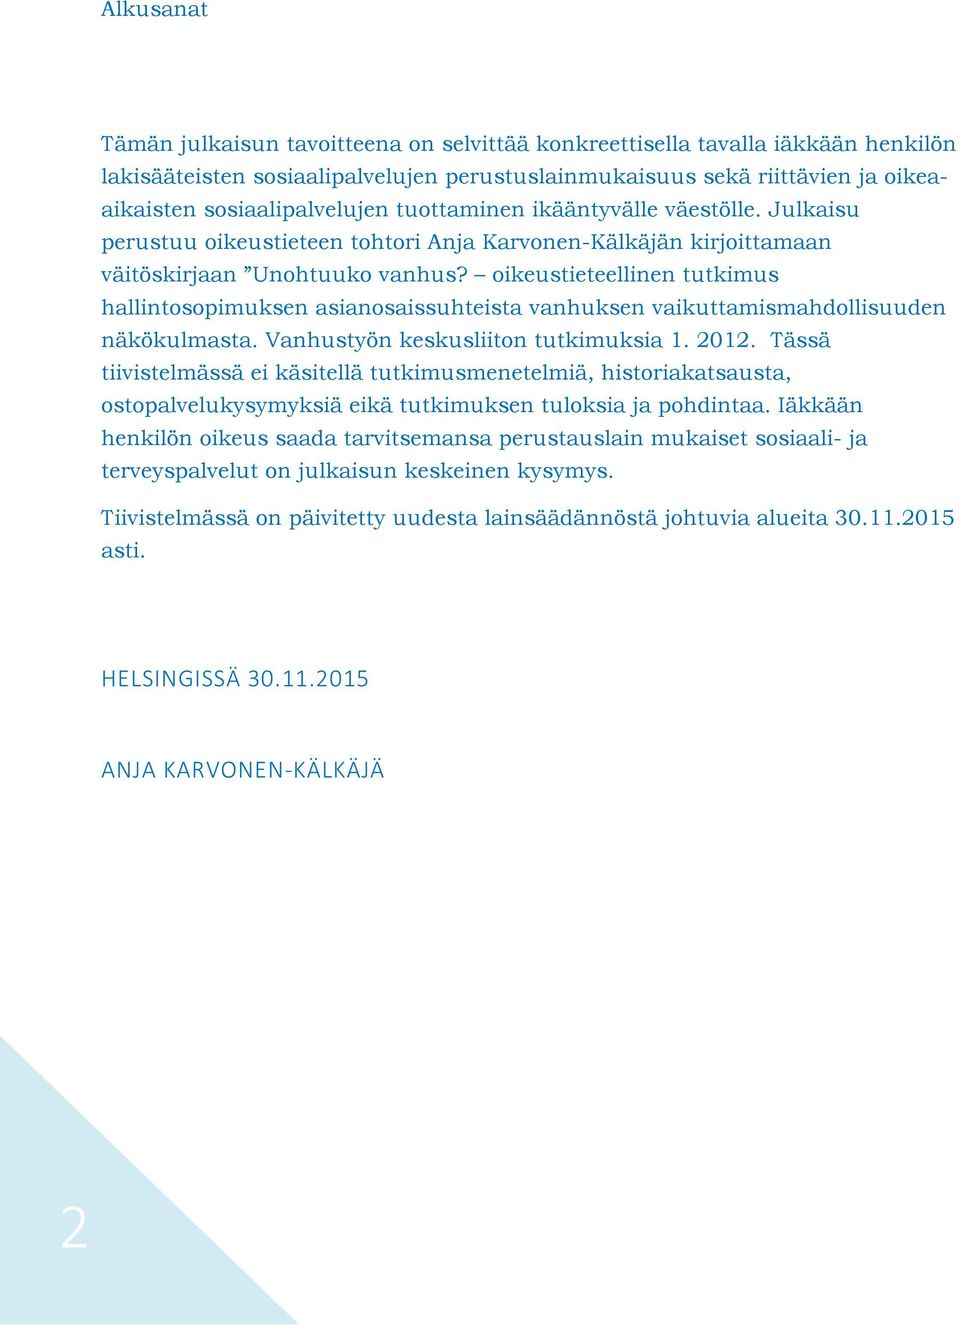 oikeustieteellinen tutkimus hallintosopimuksen asianosaissuhteista vanhuksen vaikuttamismahdollisuuden näkökulmasta. Vanhustyön keskusliiton tutkimuksia 1. 2012.